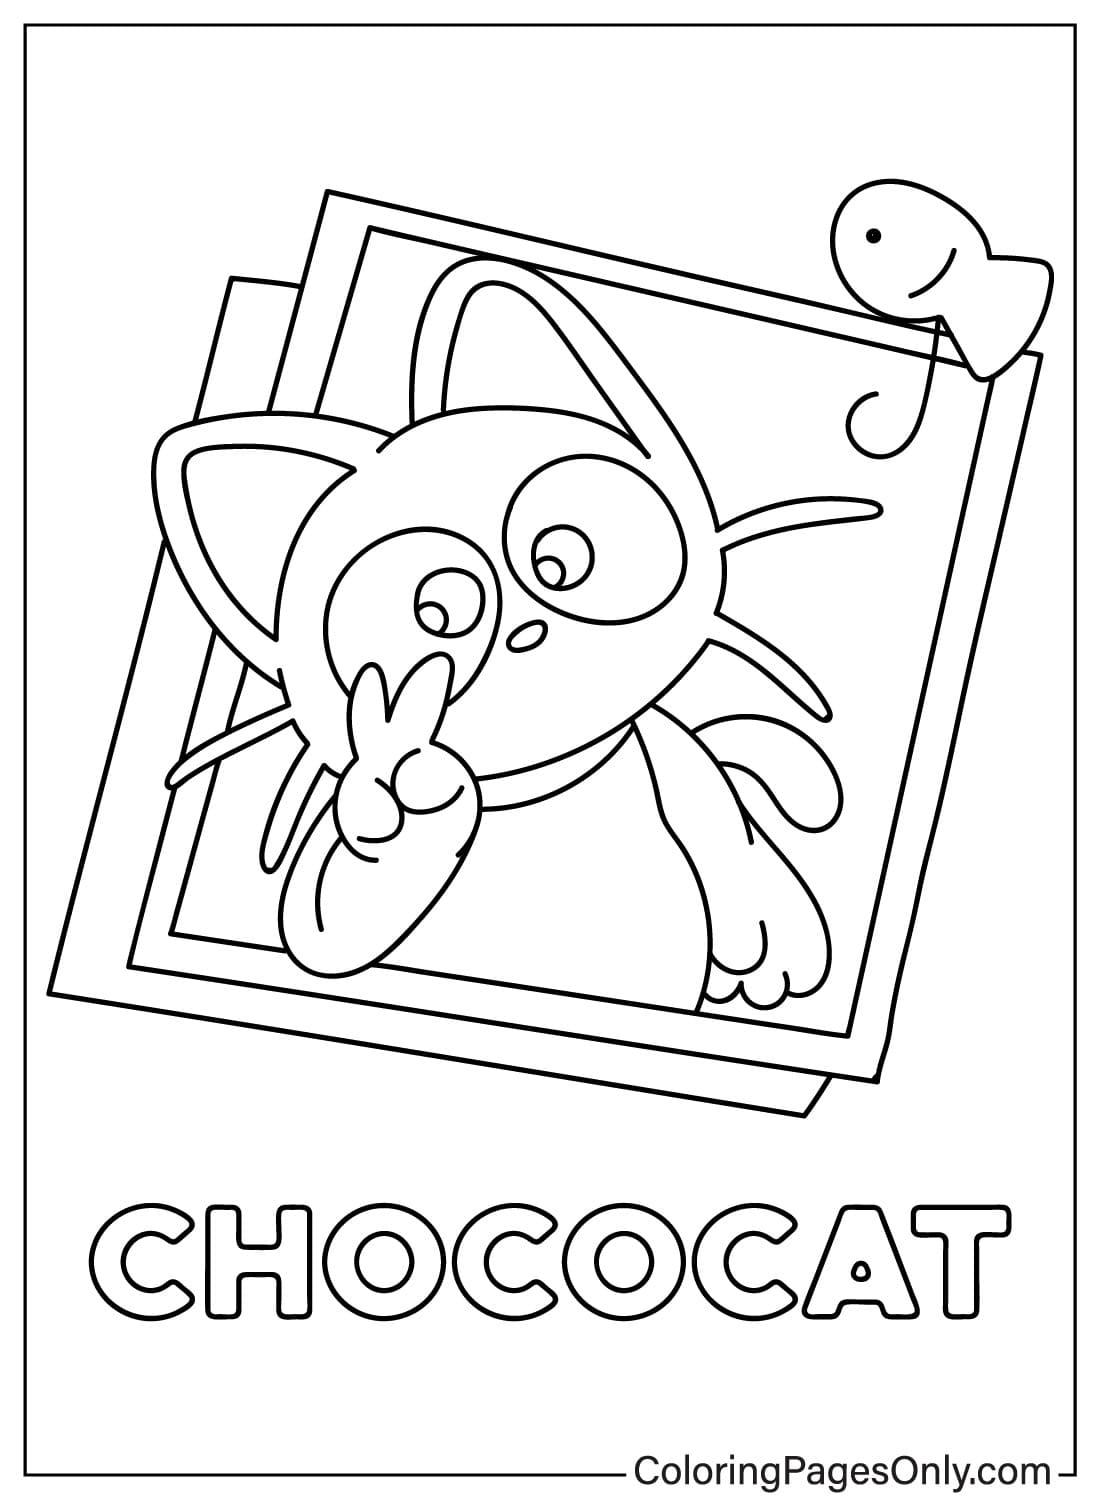 Chococat Malvorlagen Bilder von Chococat